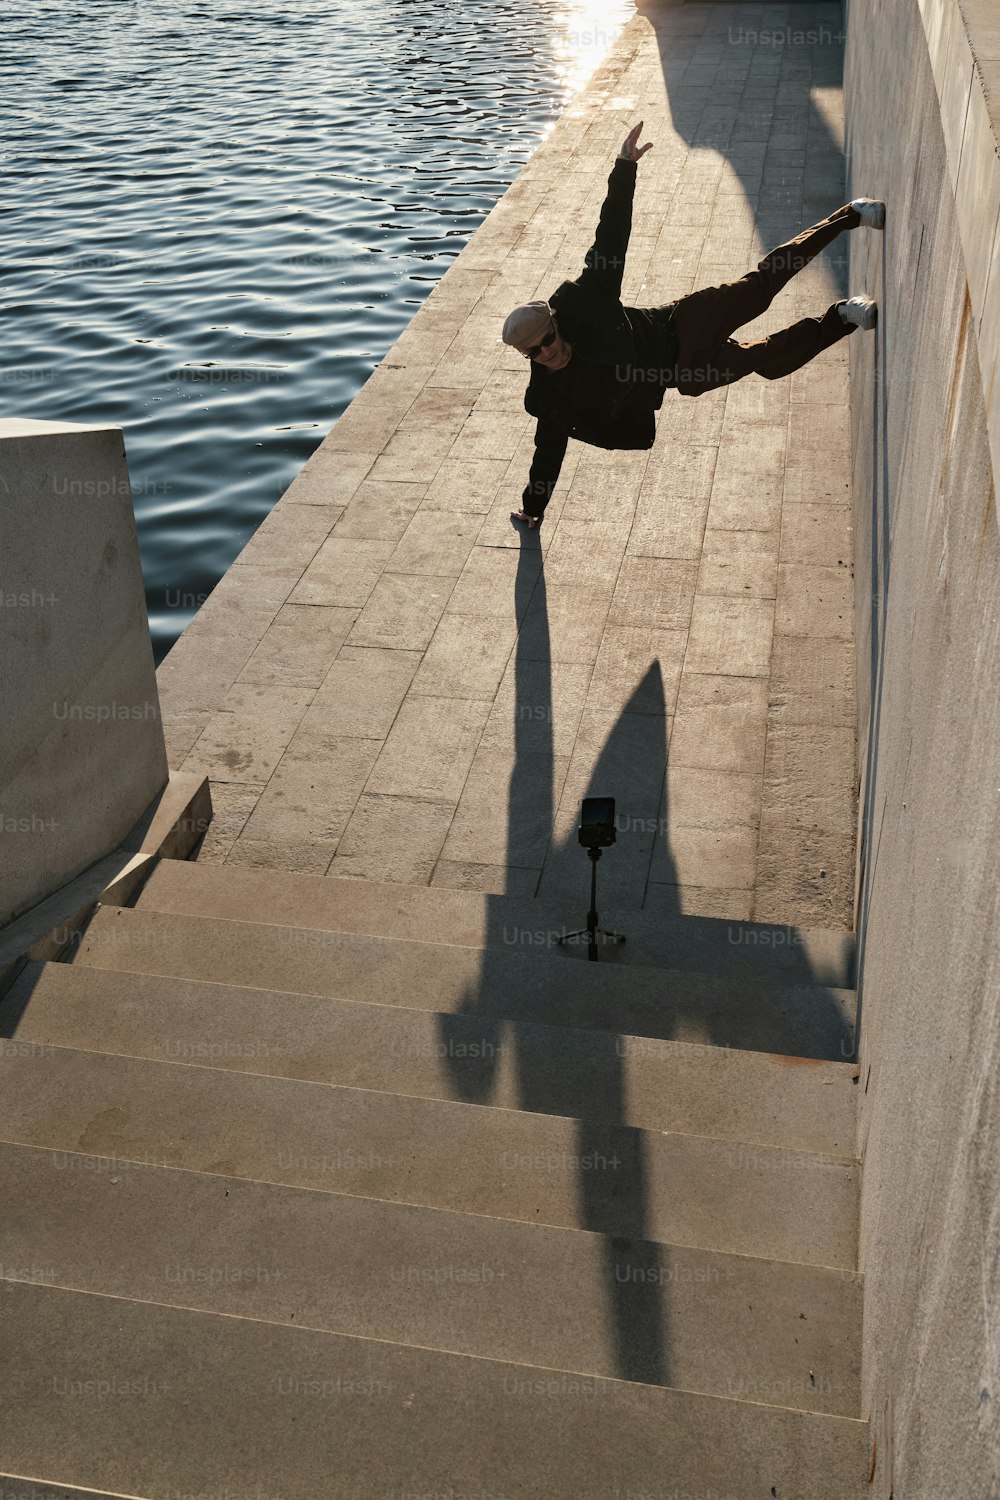 Un hombre haciendo un truco en una patineta por un tramo de escaleras